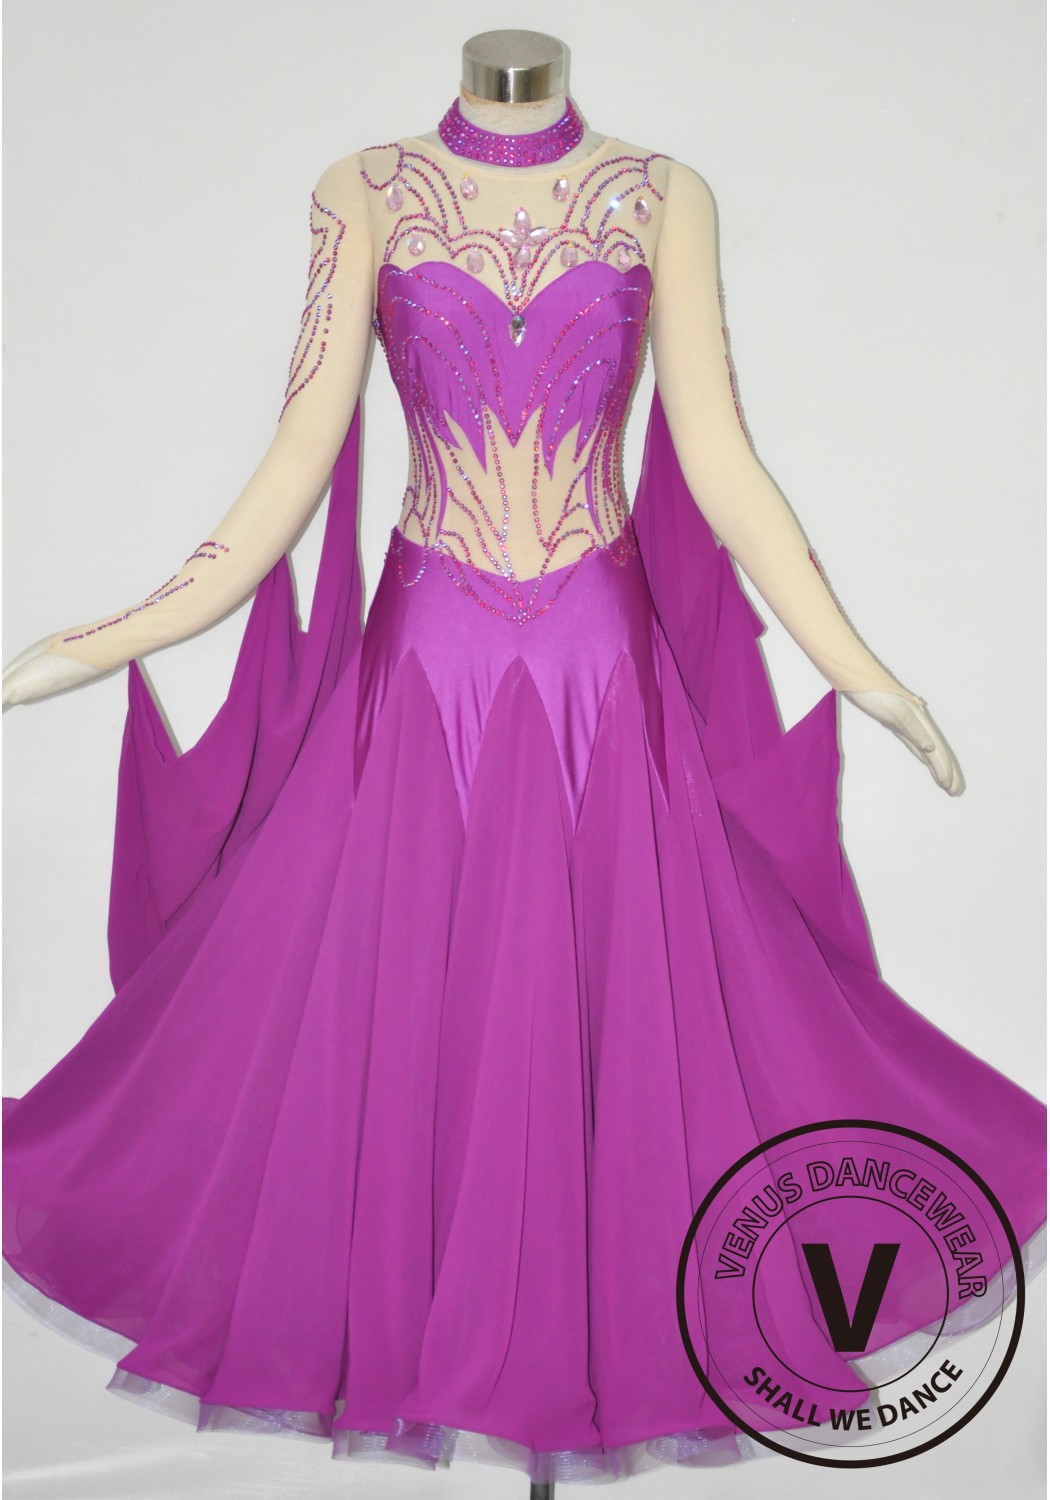 Shenzhen Yundance Dress Design Co., Ltd. - ballroom dress, Latin dress